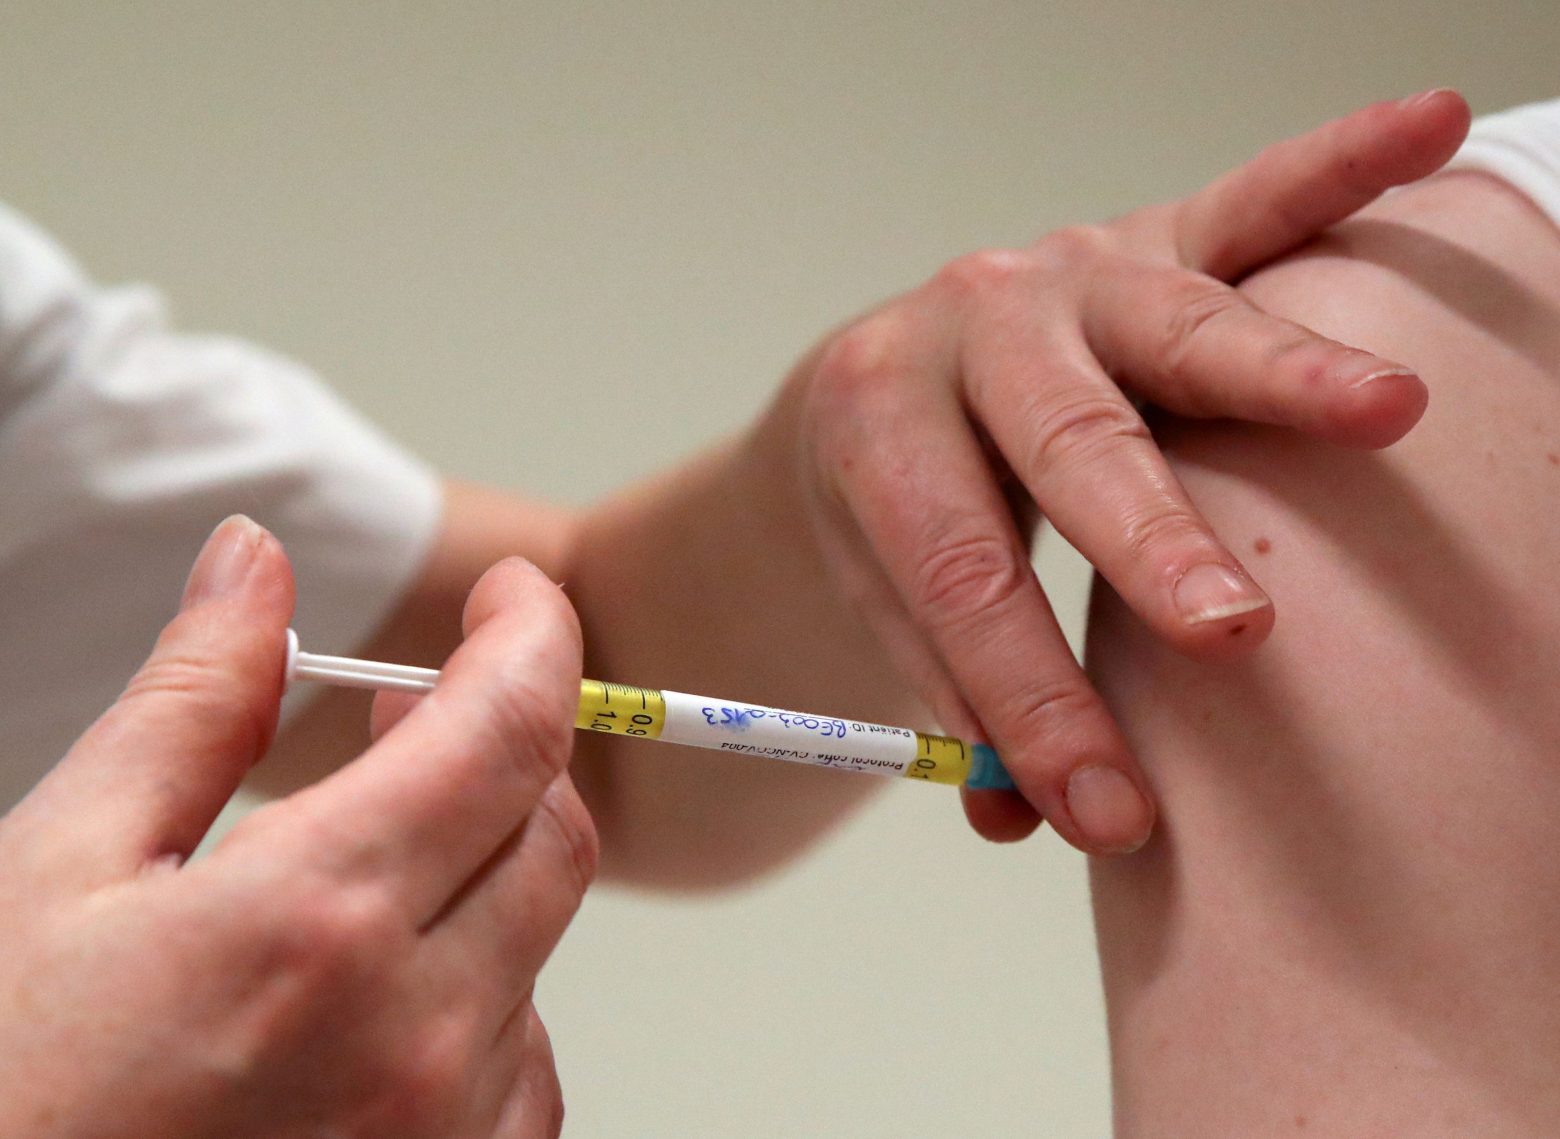 Ψαλτοπούλου - Ο εμβολιασμός του ασθενή «μηδέν» της νέας παραλλαγής έχει αποτρέψει σοβαρότερη νόσο